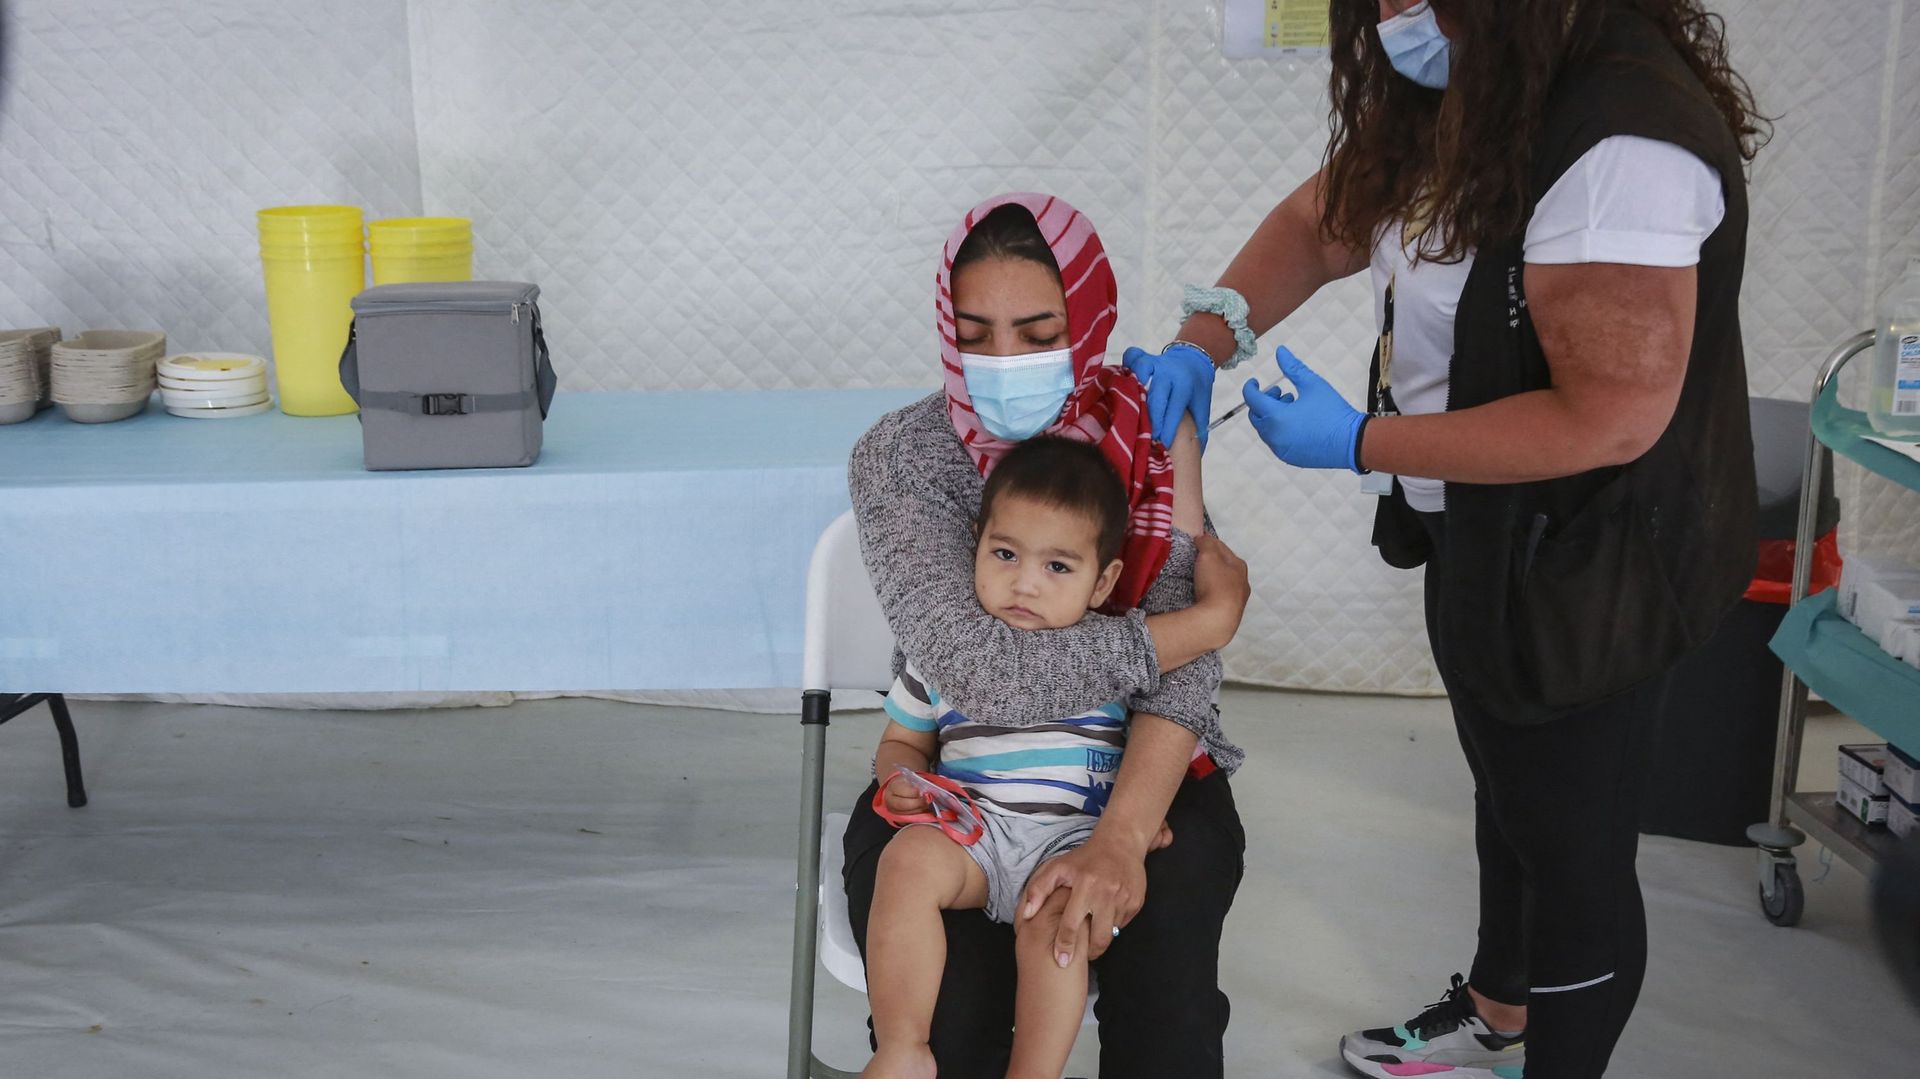 Coronavirus – Les campagnes de vaccination ignorent les réfugiés, selon une ONG